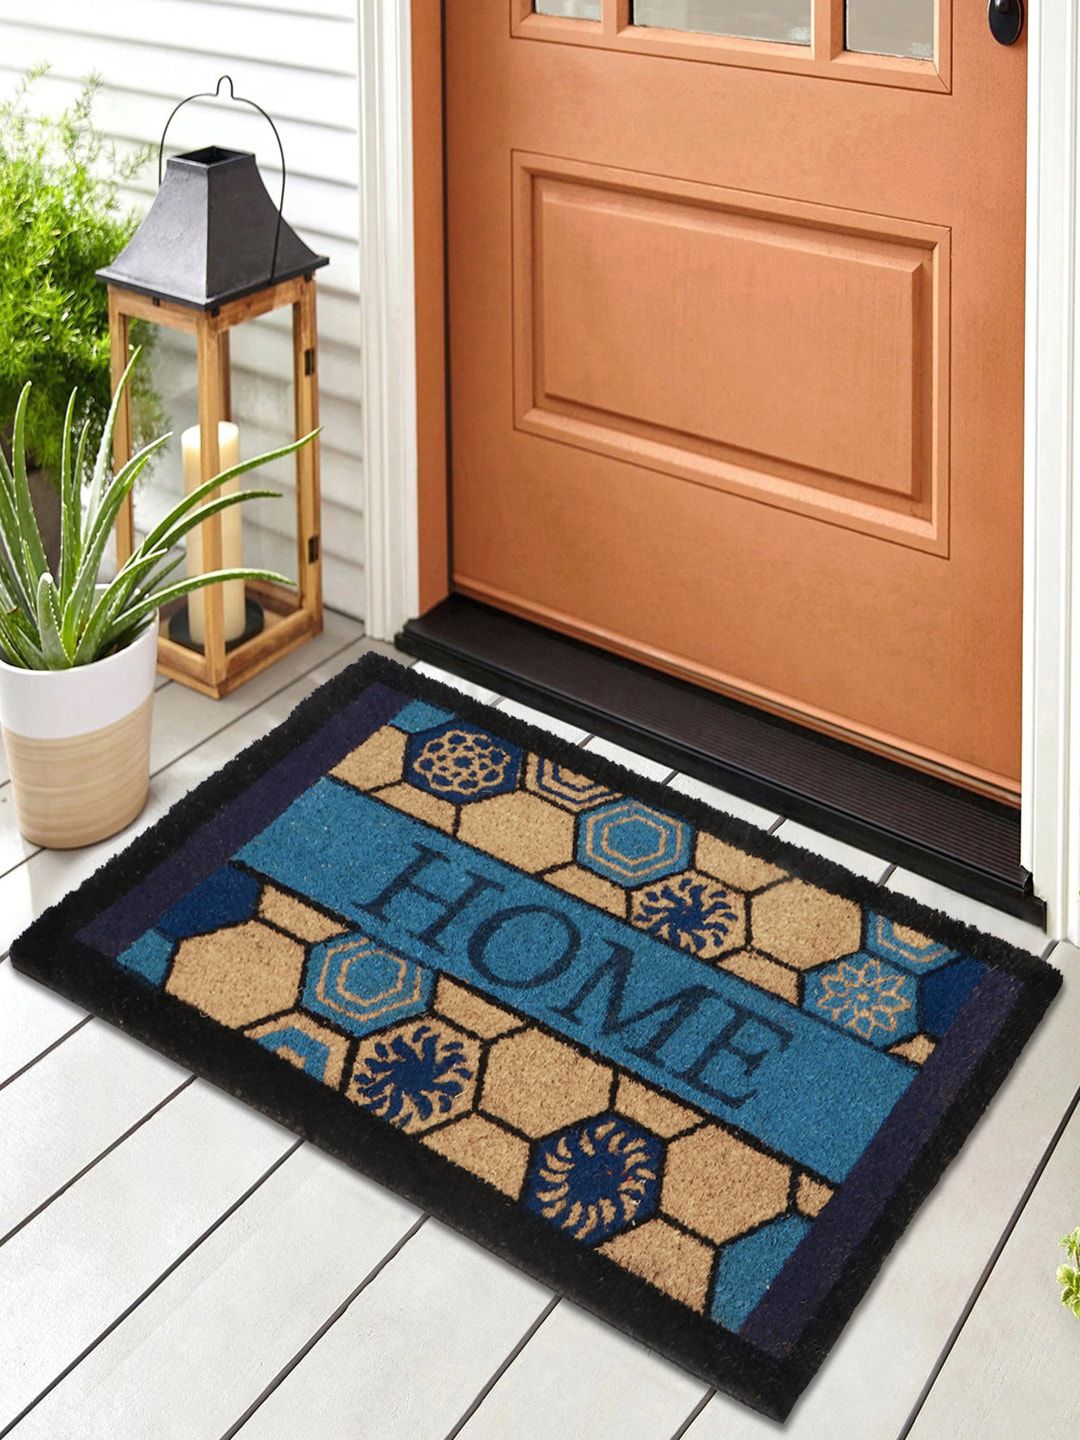 HOKIPO Brown & Black Geometric Printed Rectangular Coconut Coir Anti-Skid Doormat Price in India